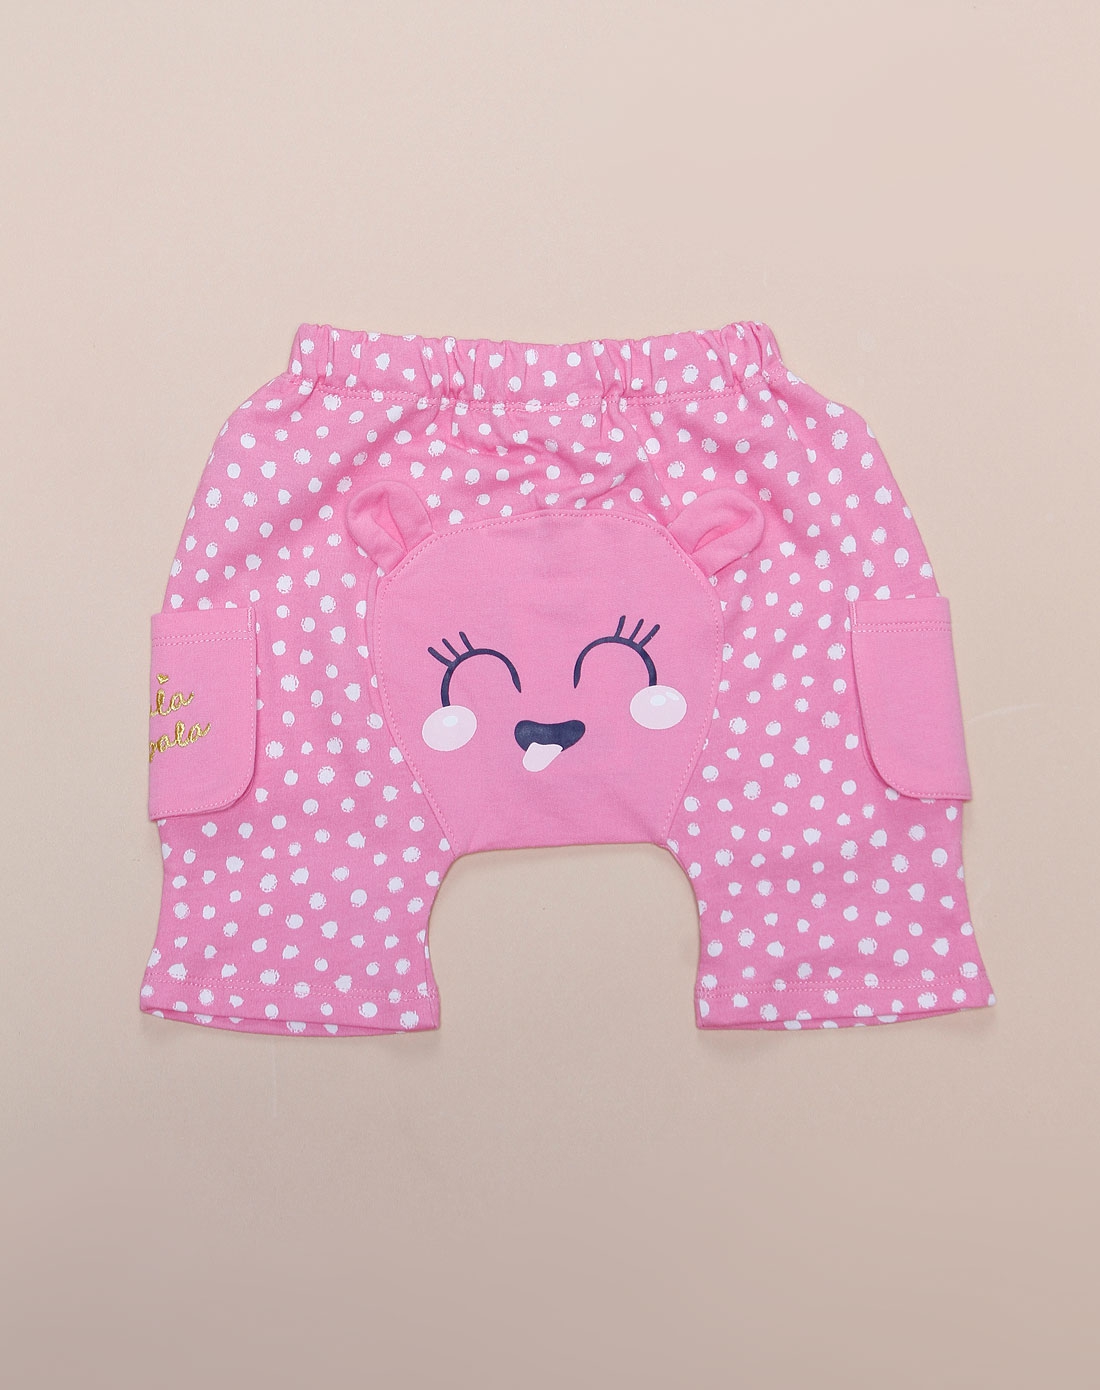 女幼童可爱卡通粉红色短裤